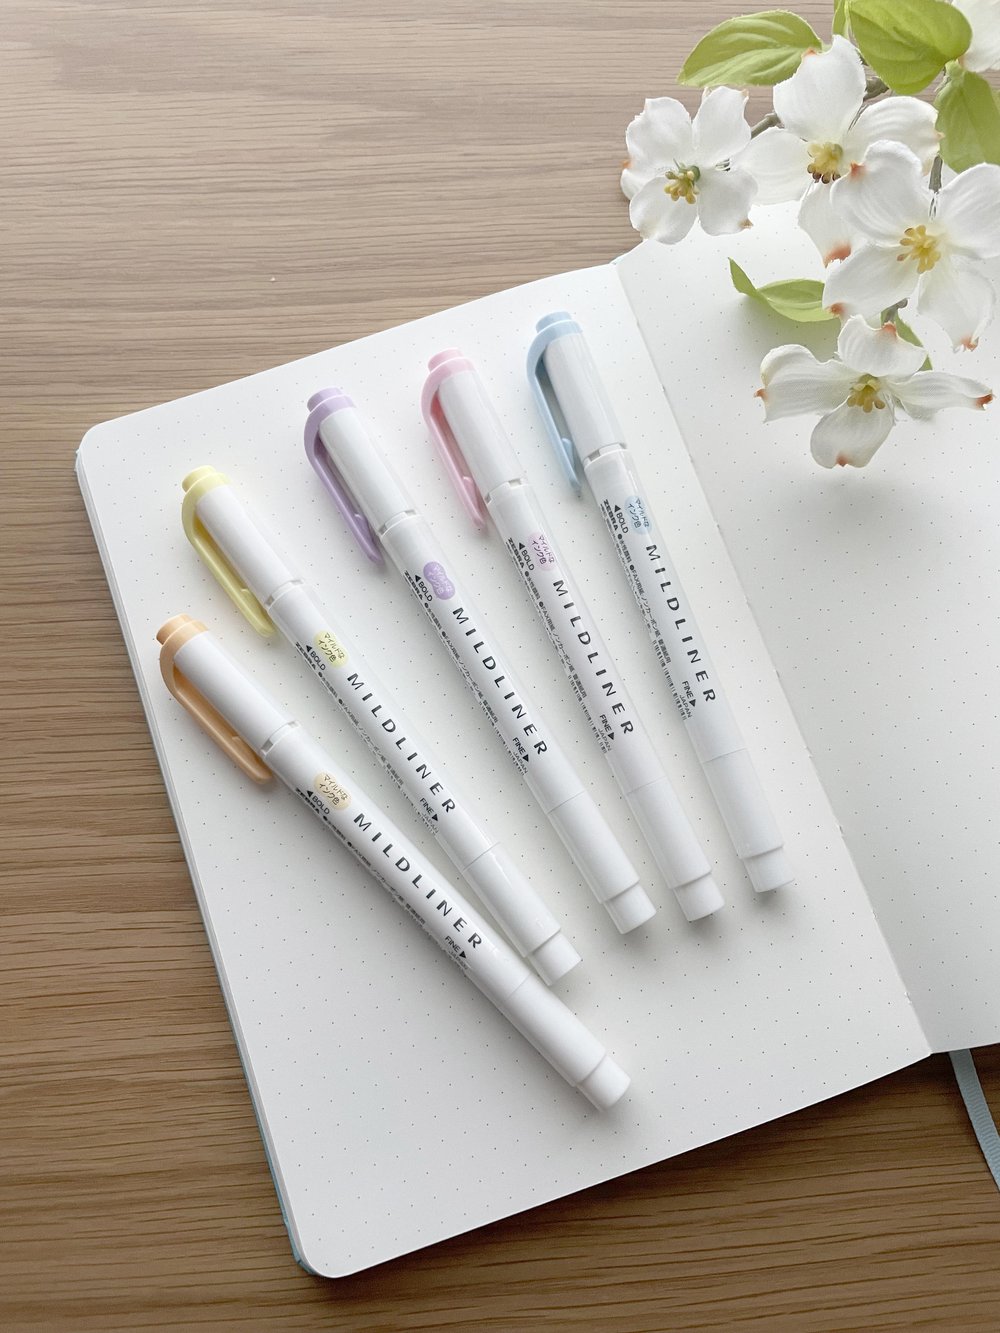 [Mildliner] Highlighter Pen Natural (set of 5 colors)